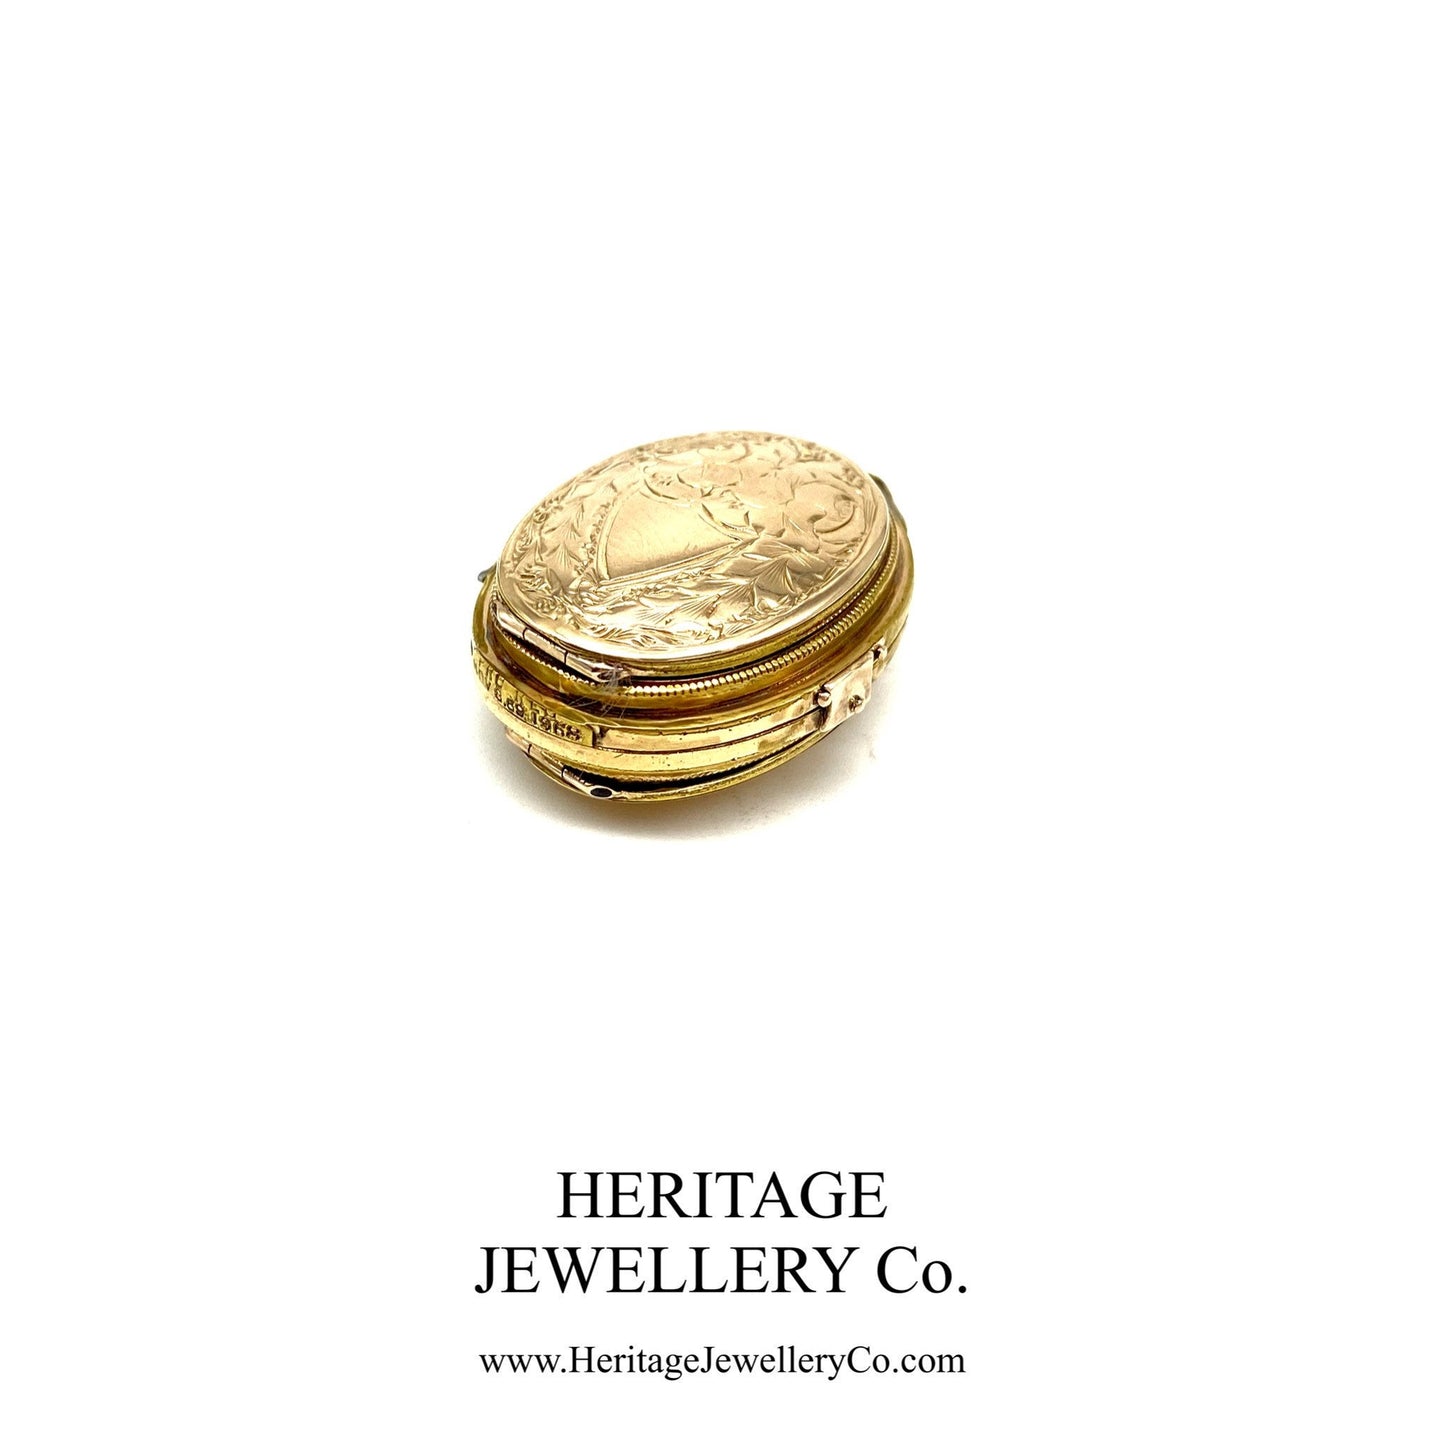 Antique Victorian Gold Multi-Aperture Locket